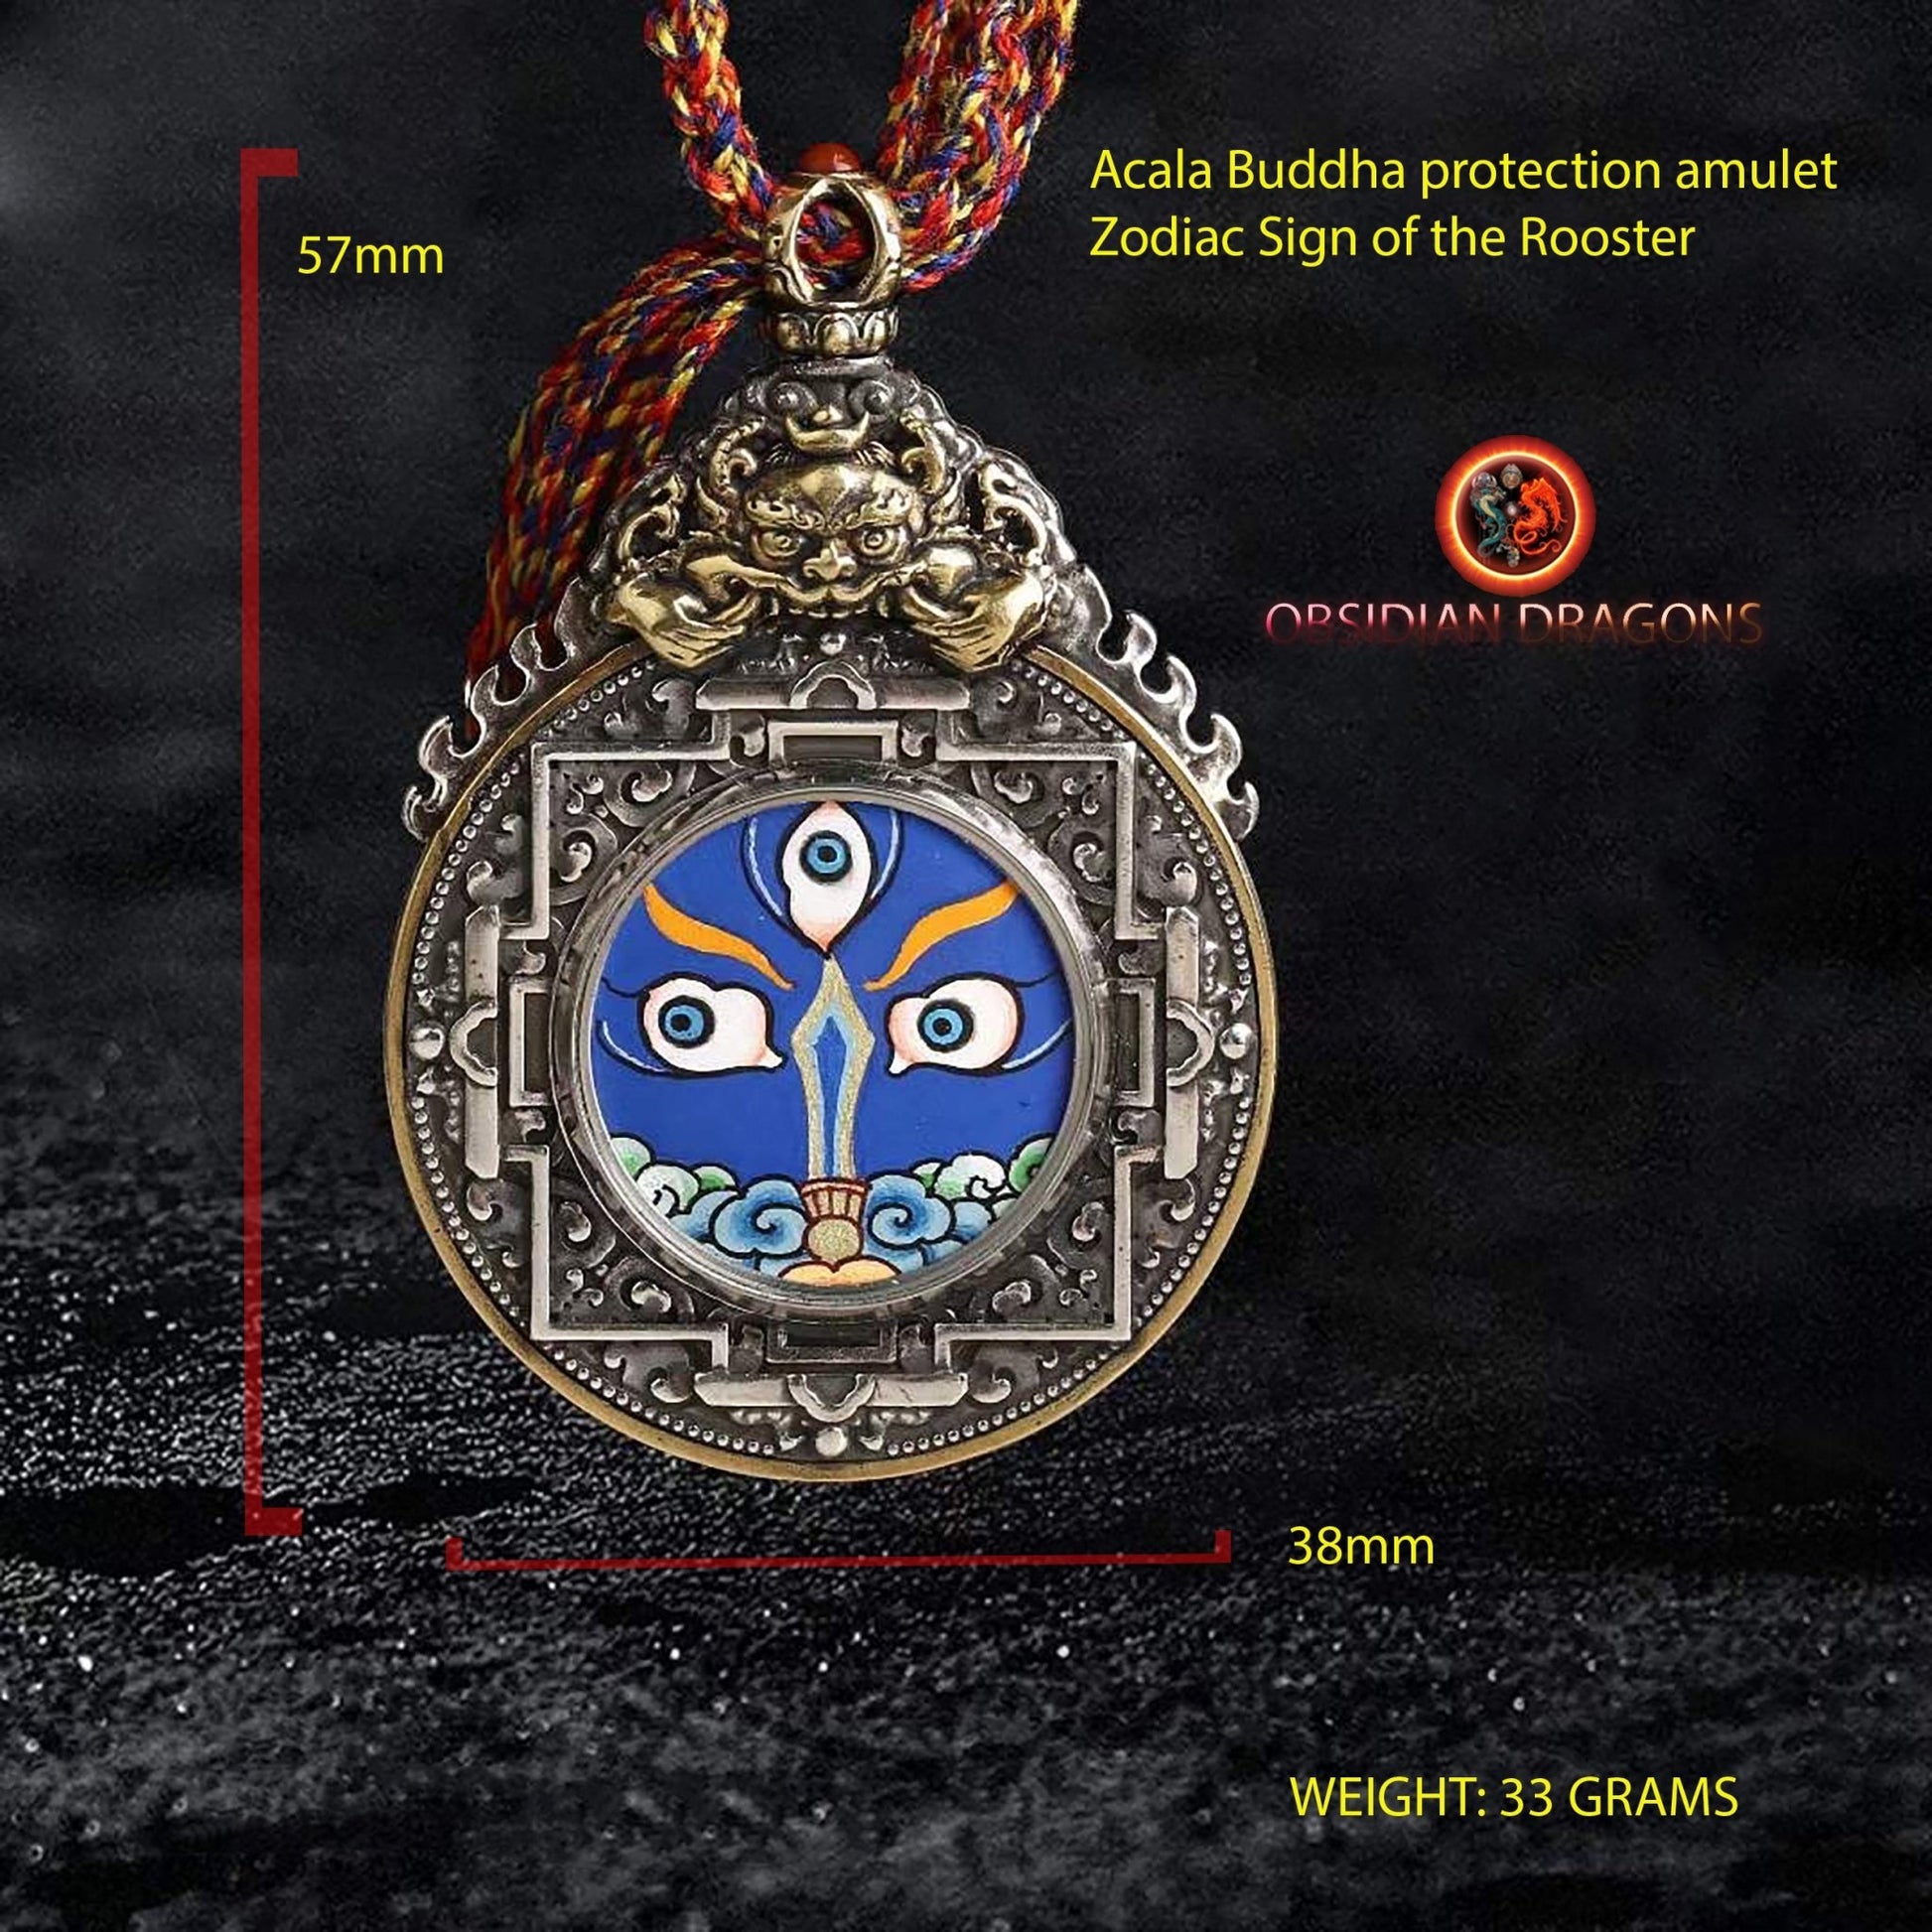 Ghau, amulette pendentif bouddhiste tibetain, bouddha protecteur en fonction de son signe zodiacal, au choix, lievre, rat, buffle ou coq - obsidian dragon